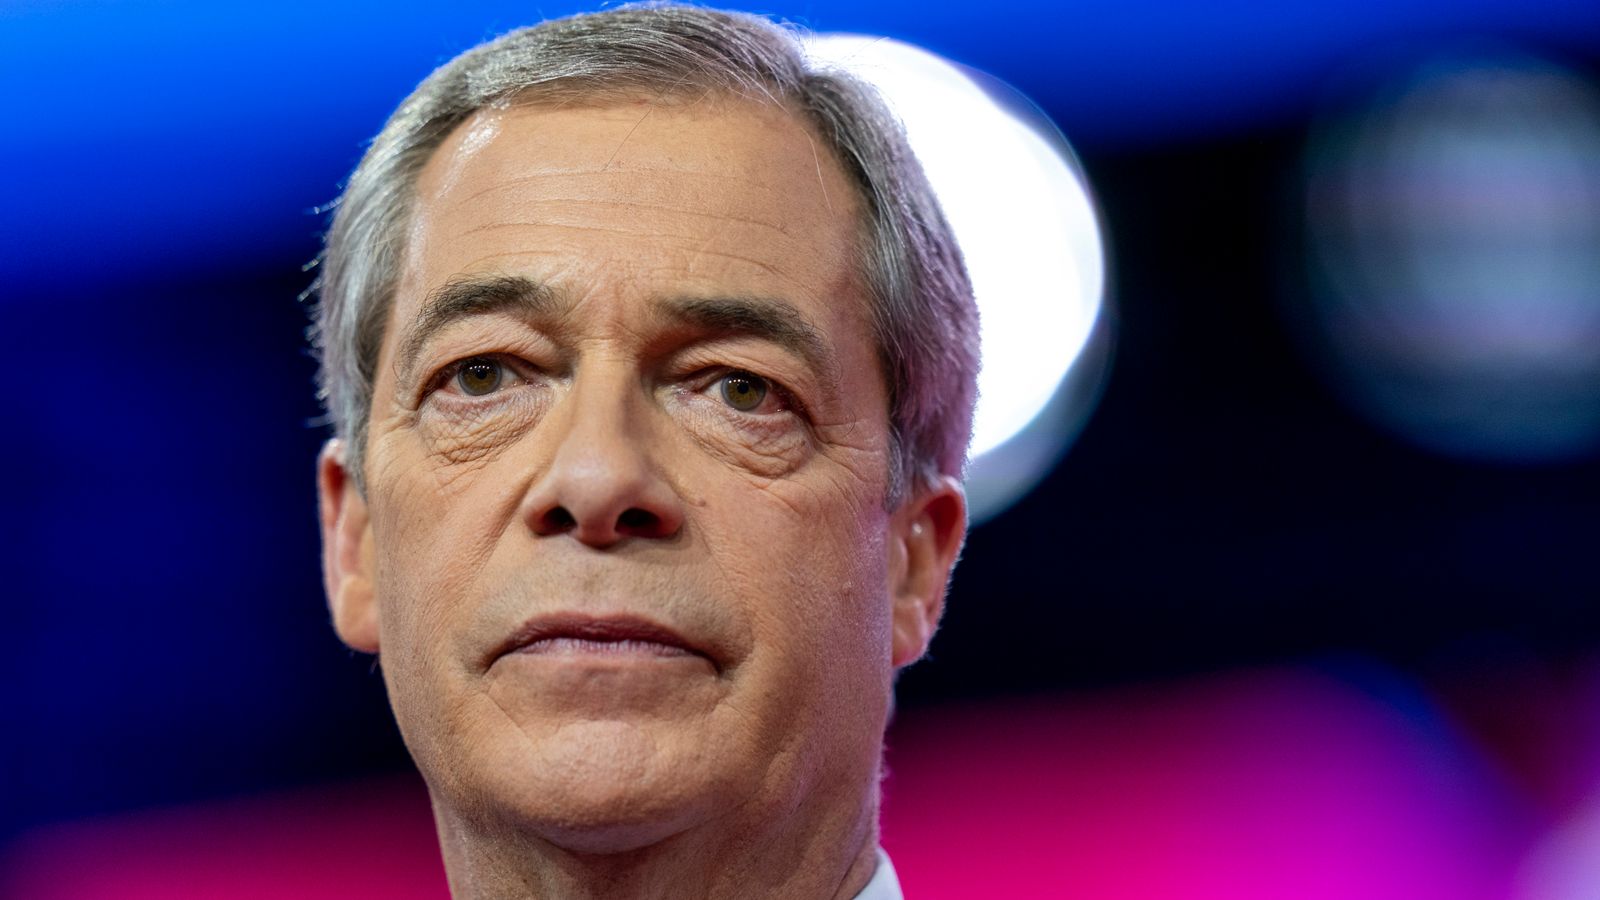 Farage domaga się wielomilionowego odszkodowania od NatWest i byłej dyrektor generalnej Rose |  Wiadomości biznesowe